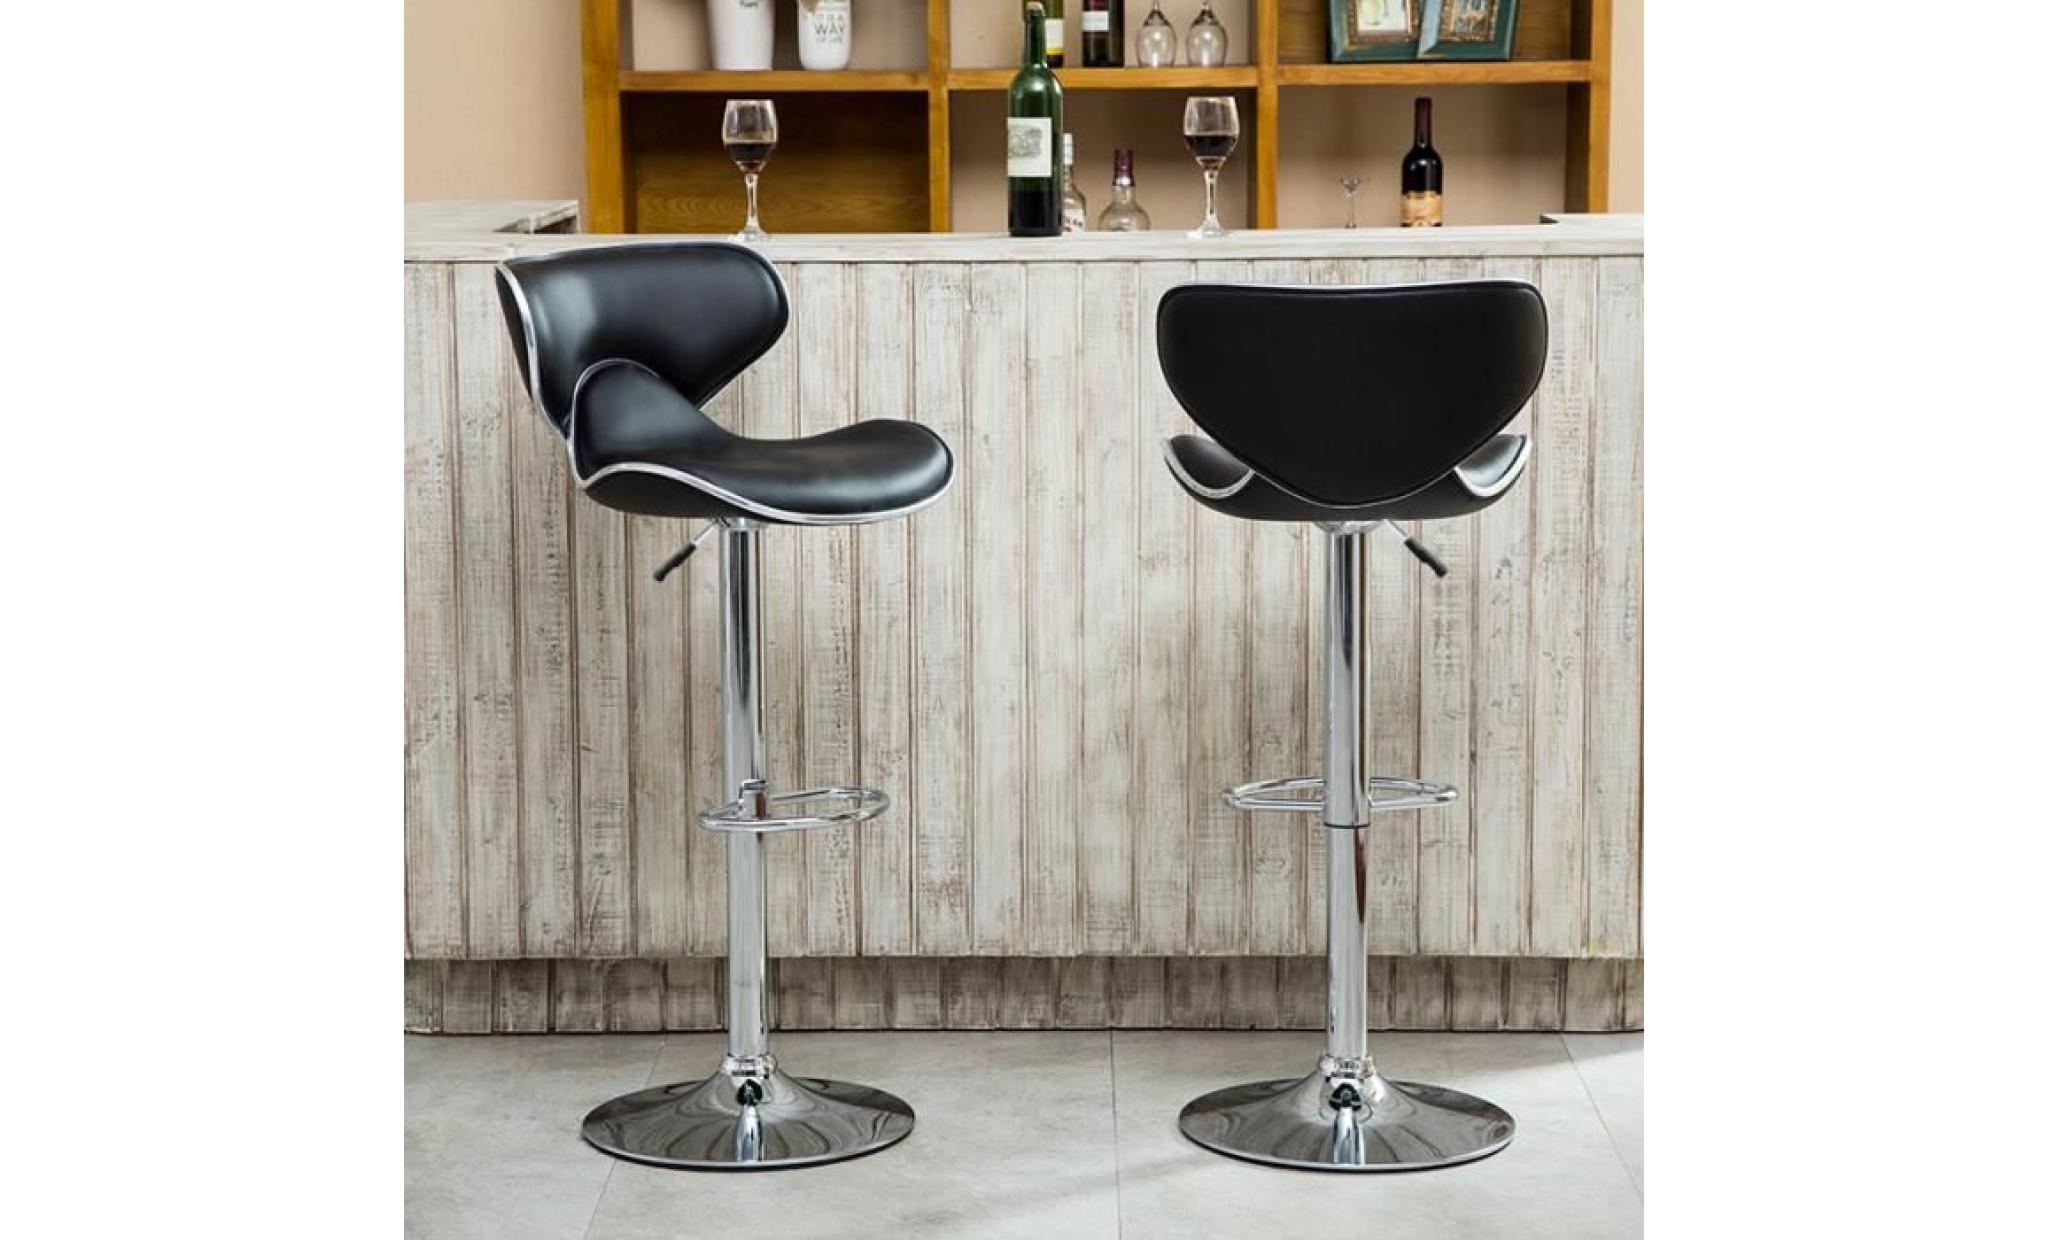 kyucc 2 tabouret de bar en similicuir avec siège bien rembourré, tabourets réglable comptoir cuisine,noir